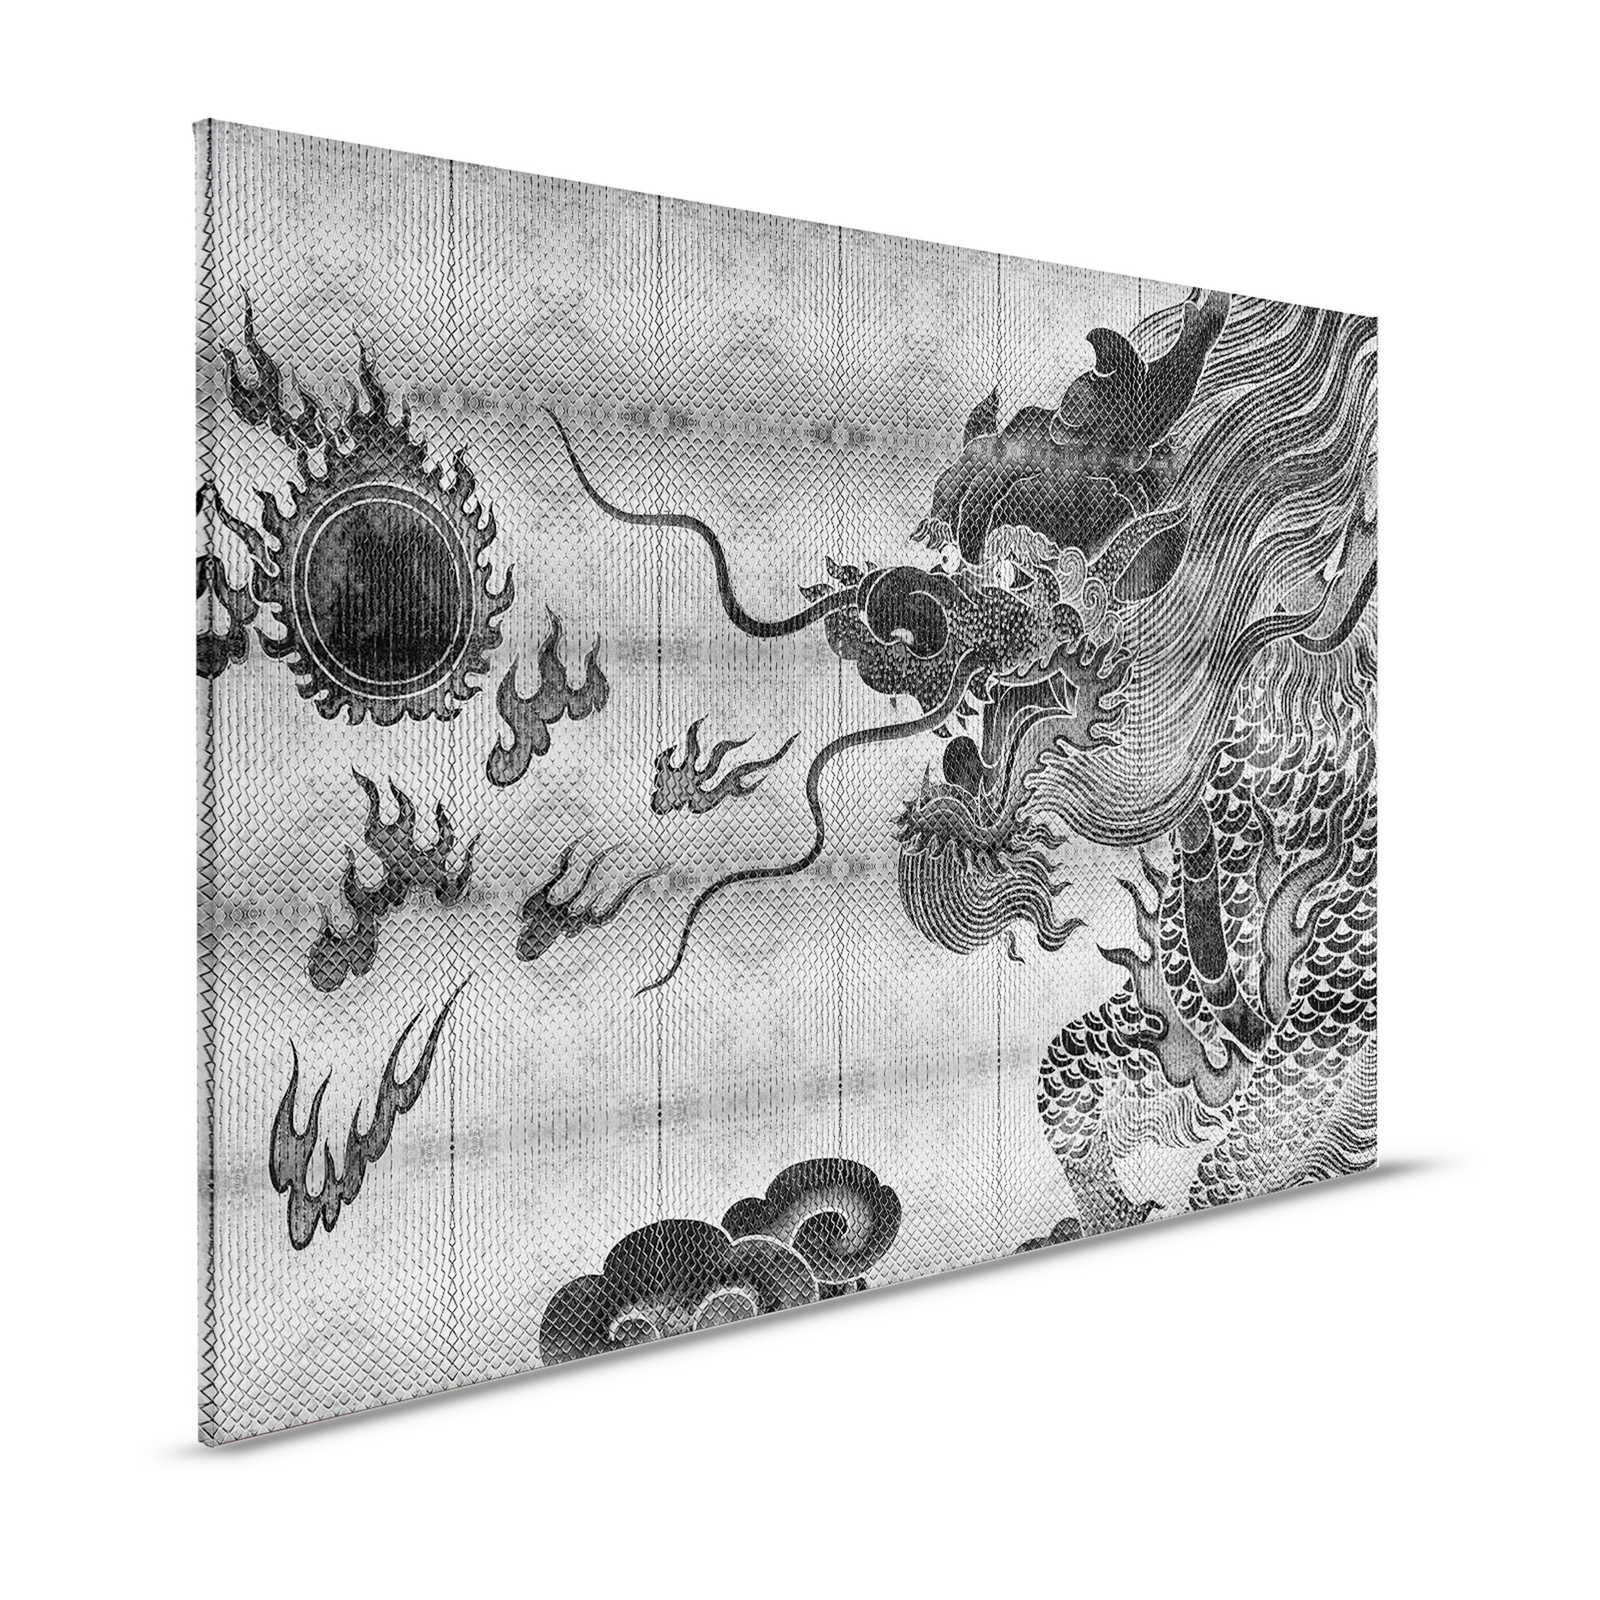 Shenzen 3 - Dragon toile argent métallique style asiatique - 1,20 m x 0,80 m
